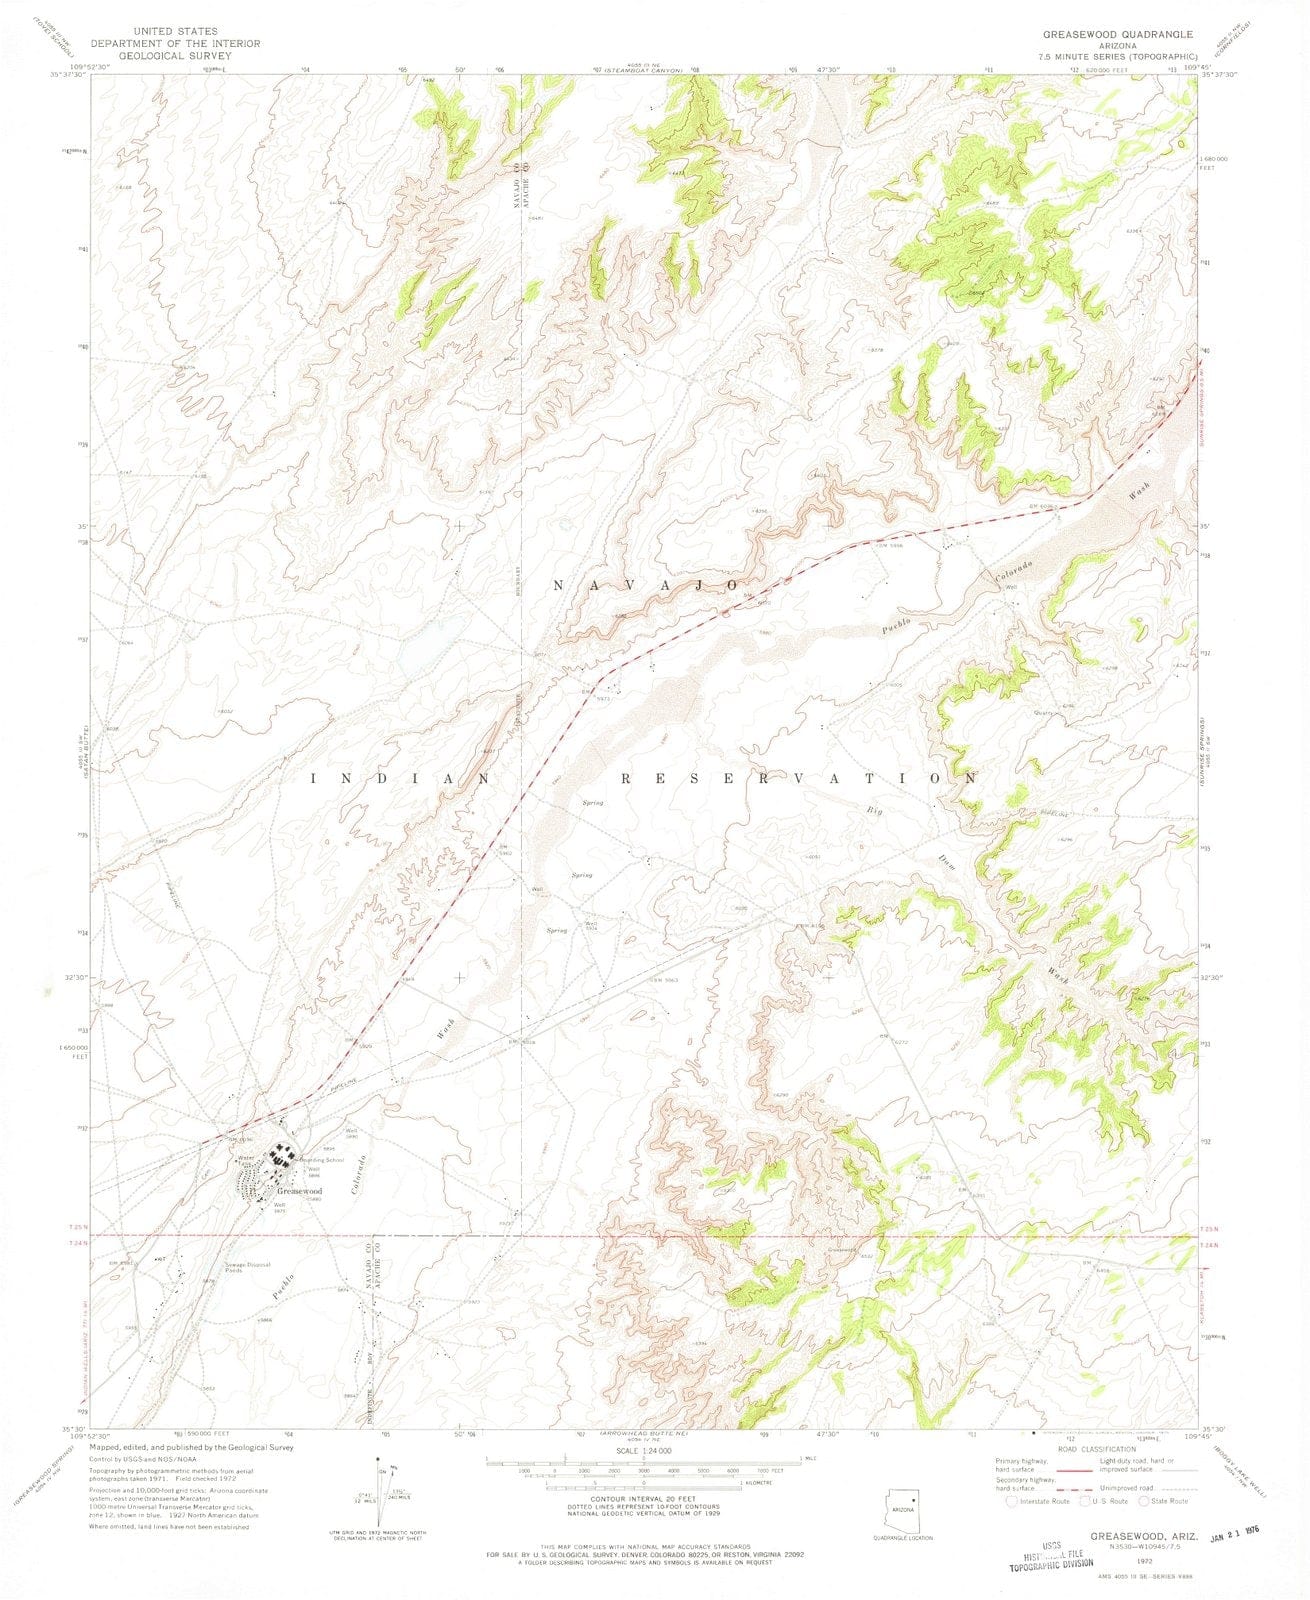 1972 Greasewood, AZ - Arizona - USGS Topographic Map